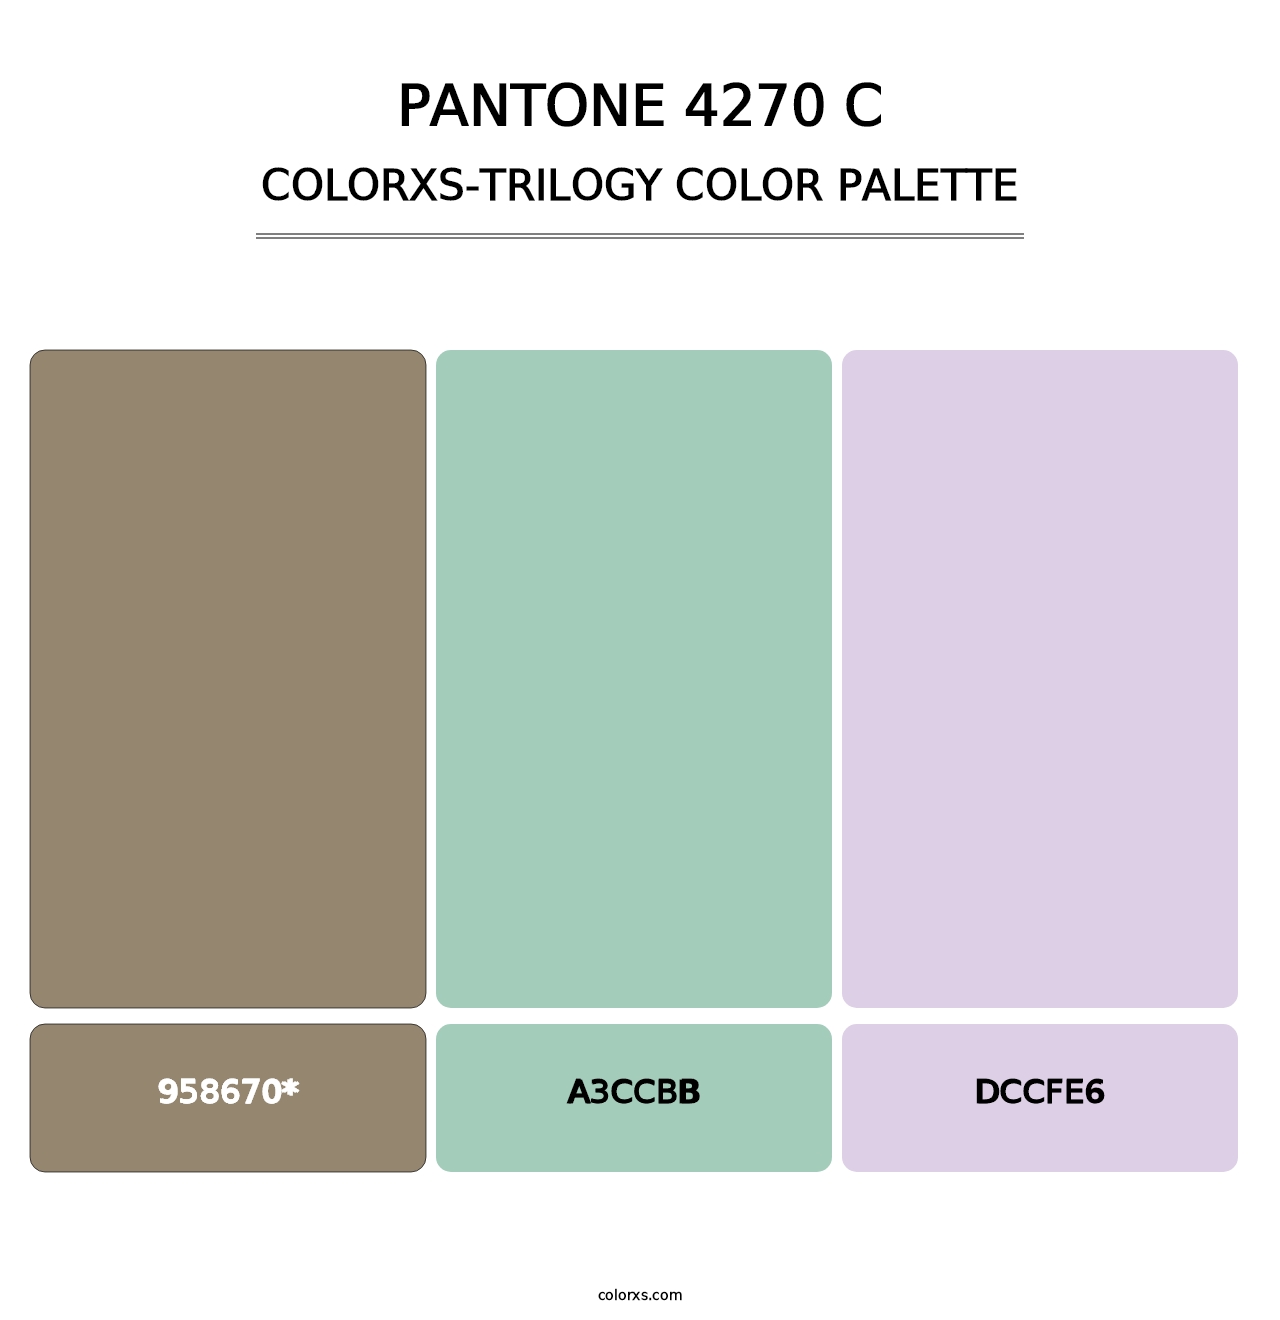 PANTONE 4270 C - Colorxs Trilogy Palette